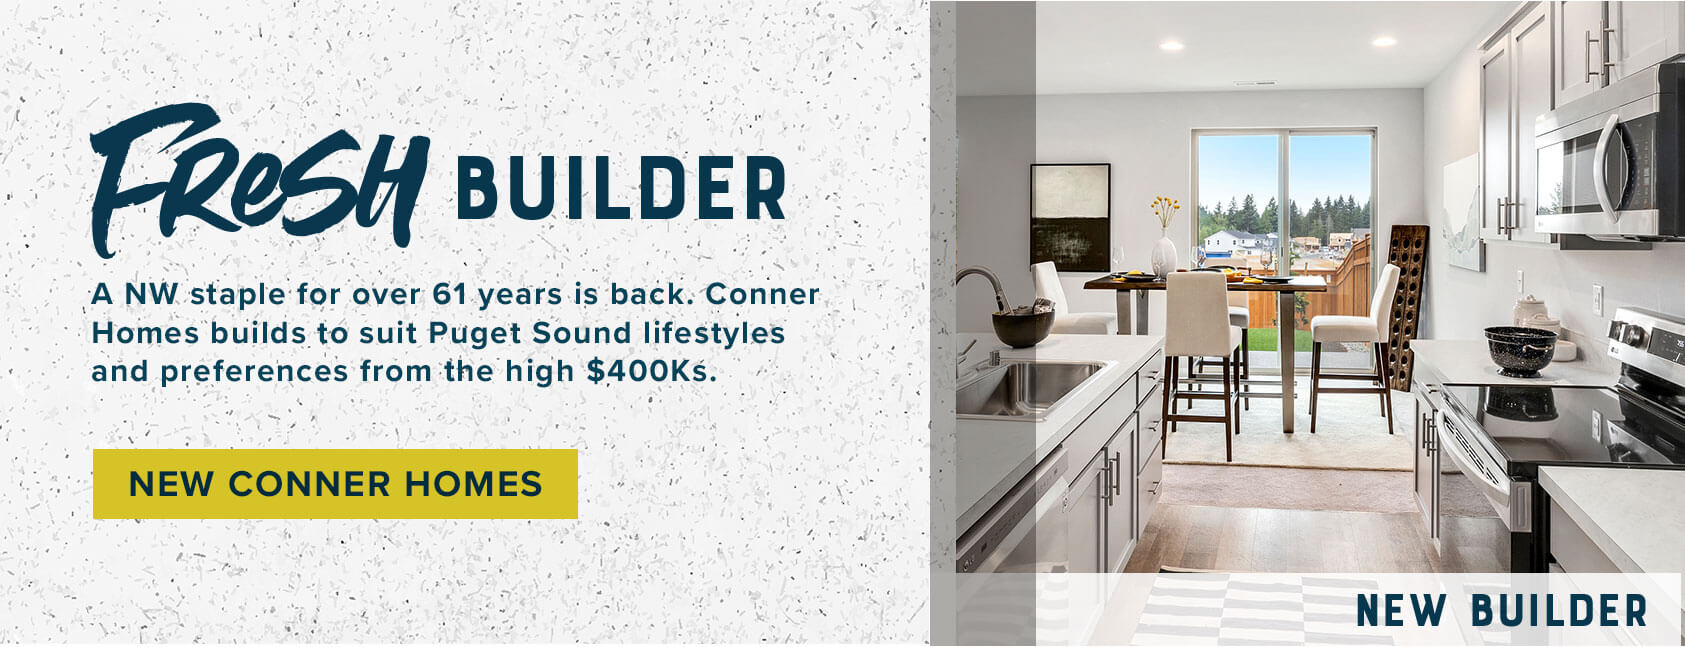 Fresh Builder - New Conner Homes